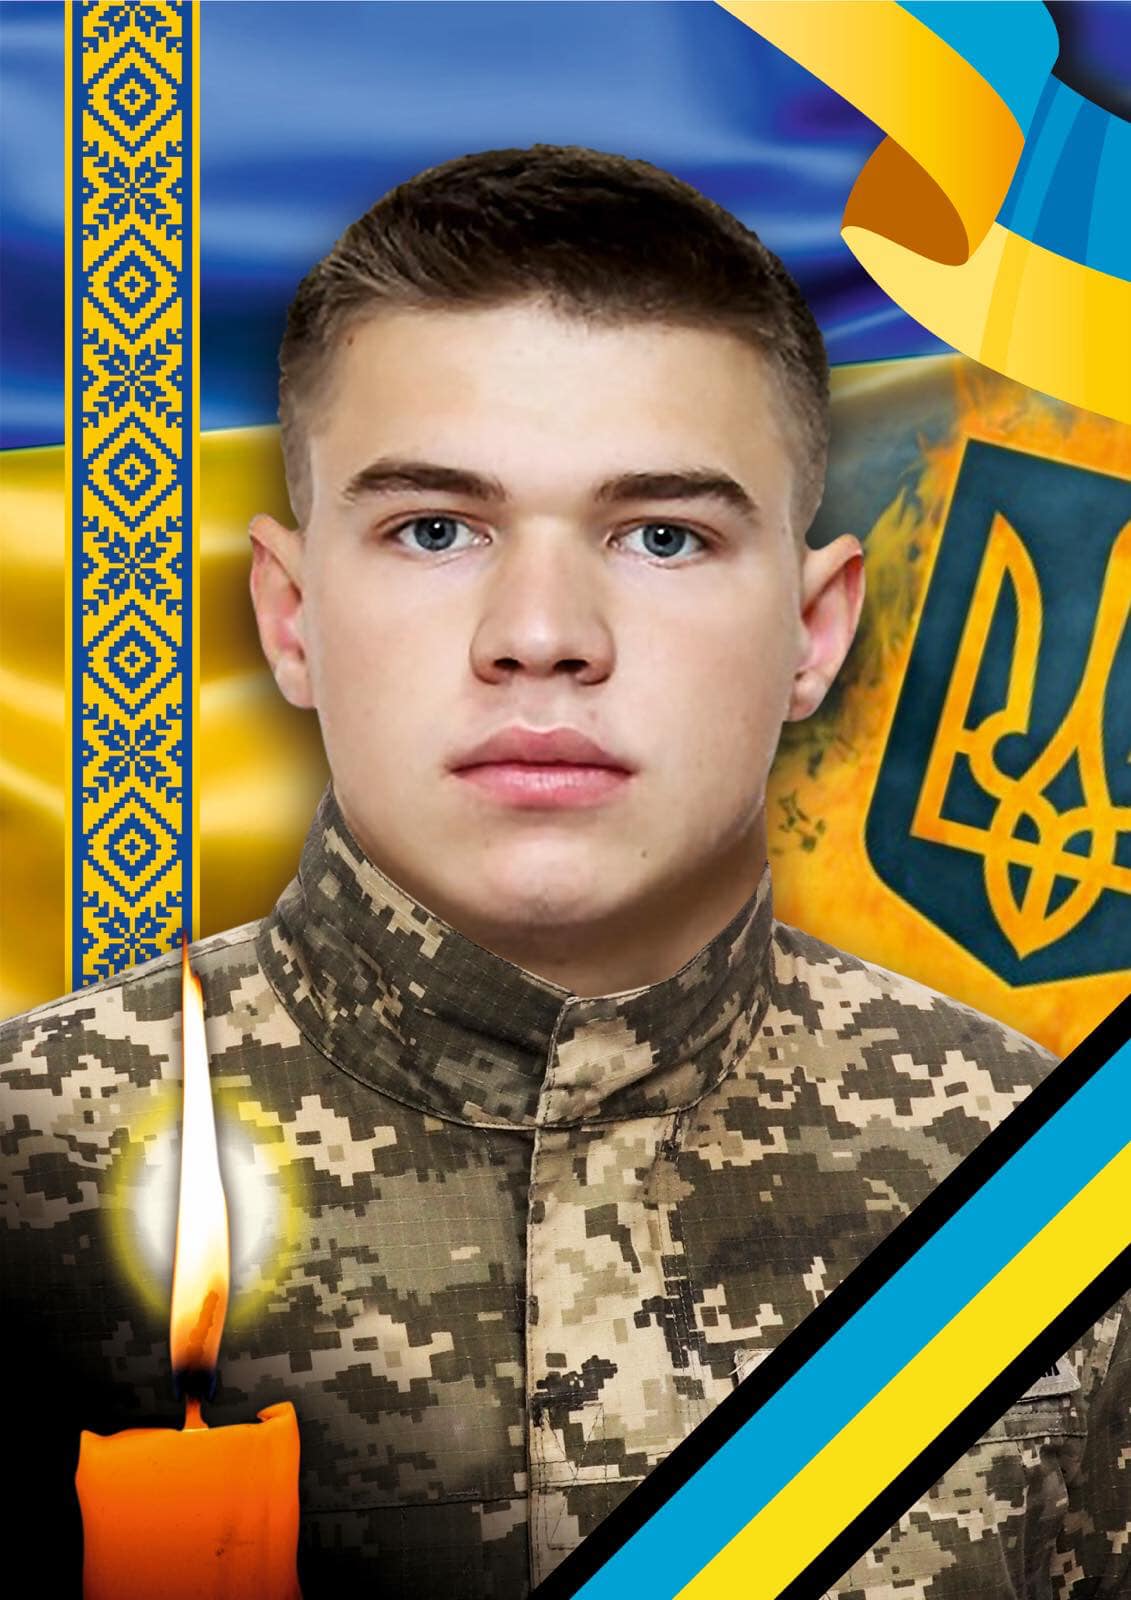 Виконуючи бойове завдання, на фронті загинув 22-річний воїн з Закарпаття Влад-Володимир Пастеляк (ФОТО)